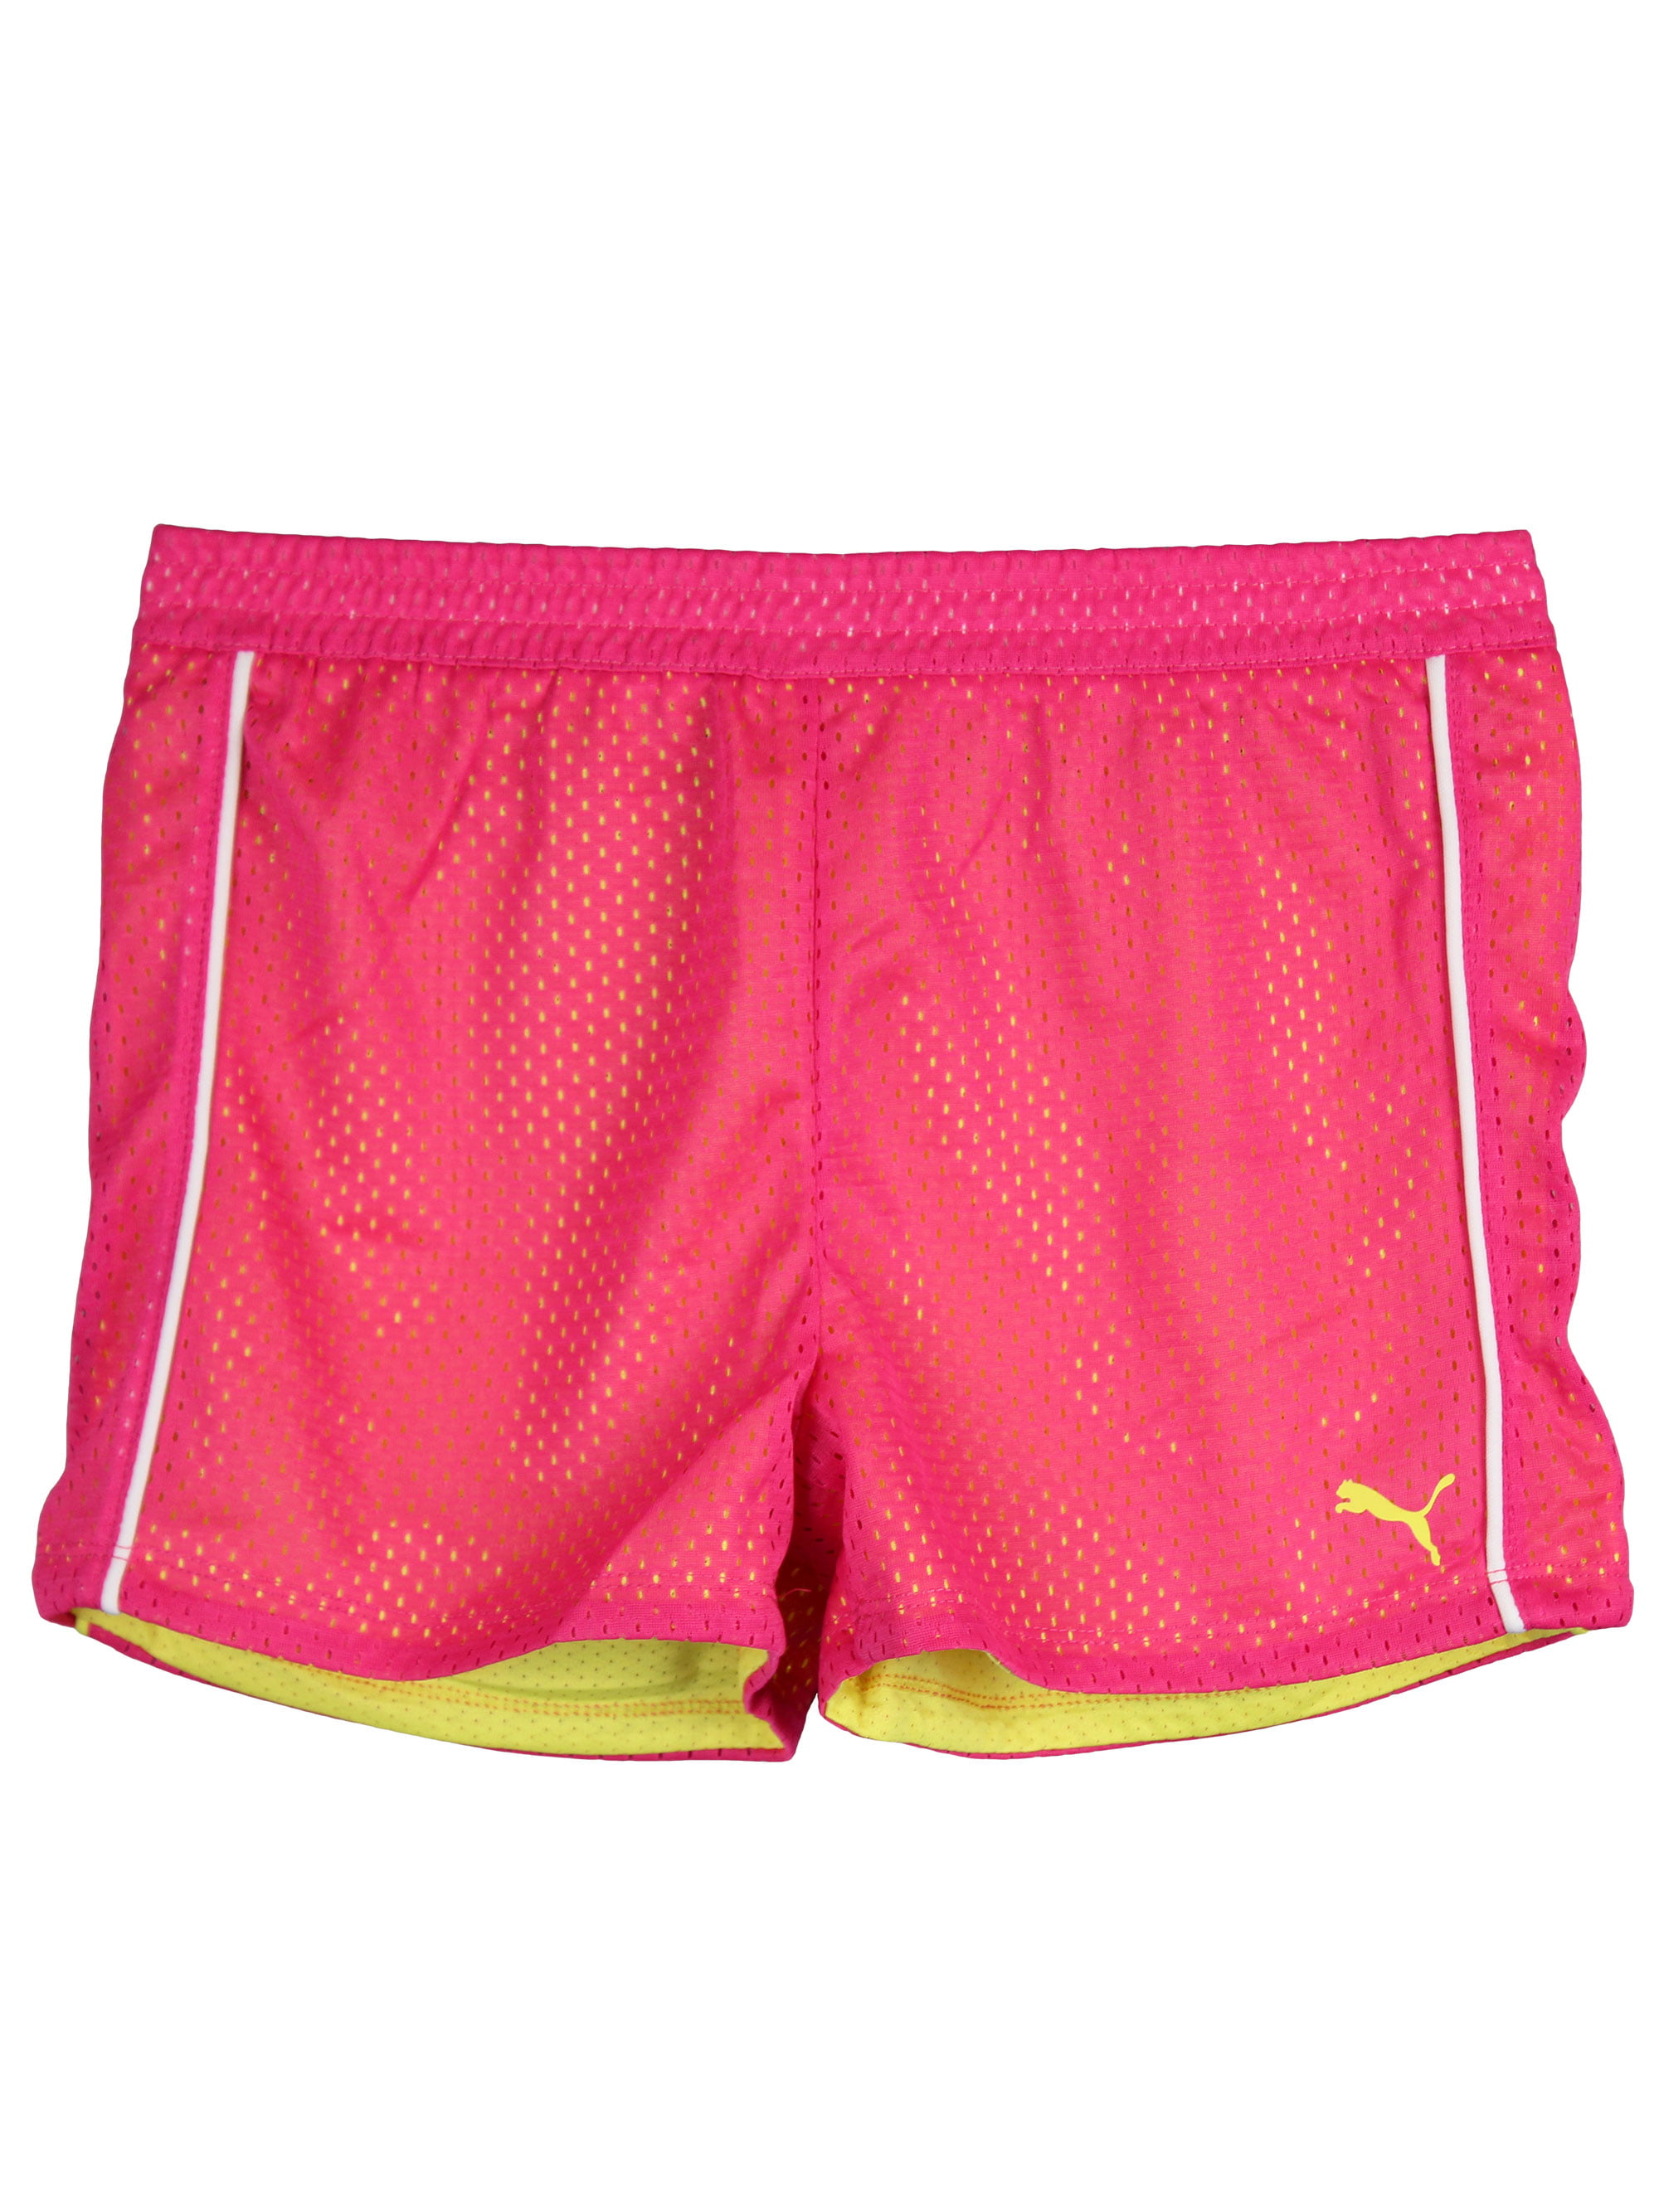 puma shorts pink